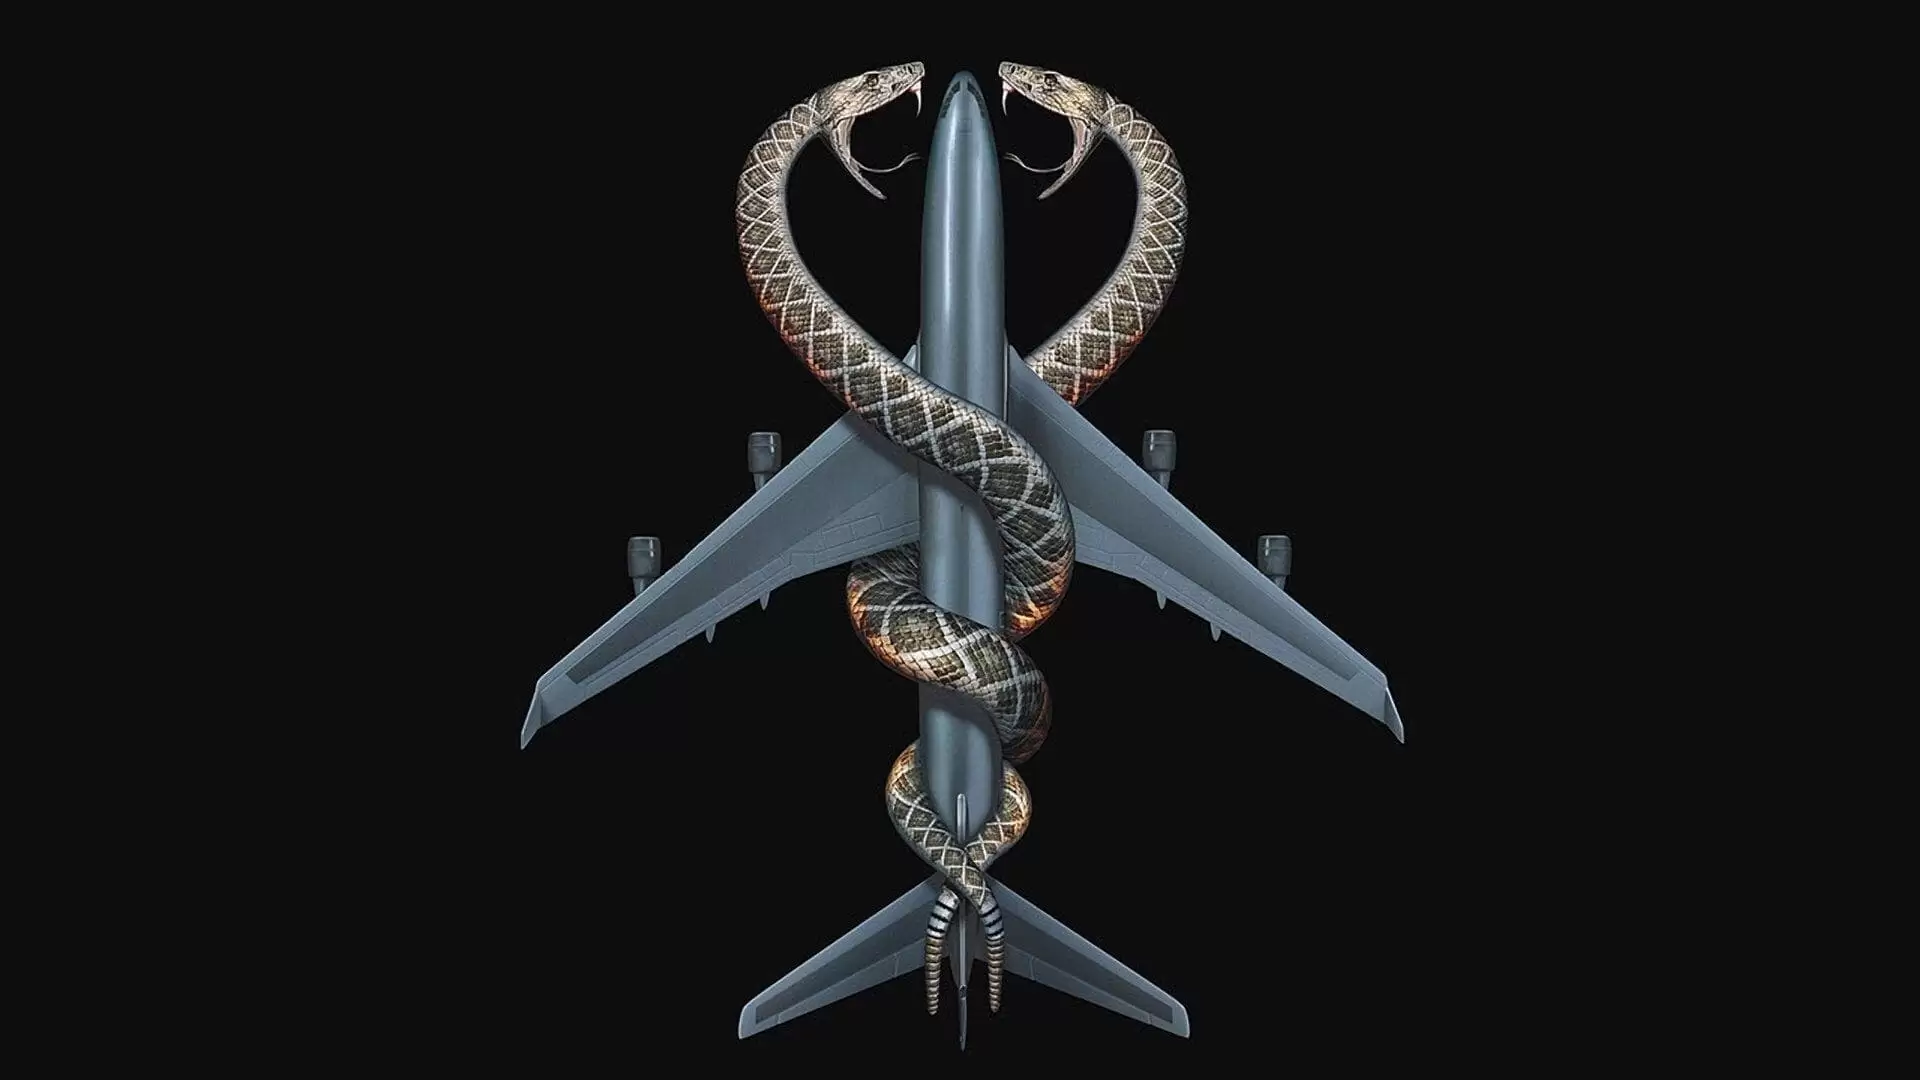 دانلود فیلم Snakes on a Plane 2006 با زیرنویس فارسی